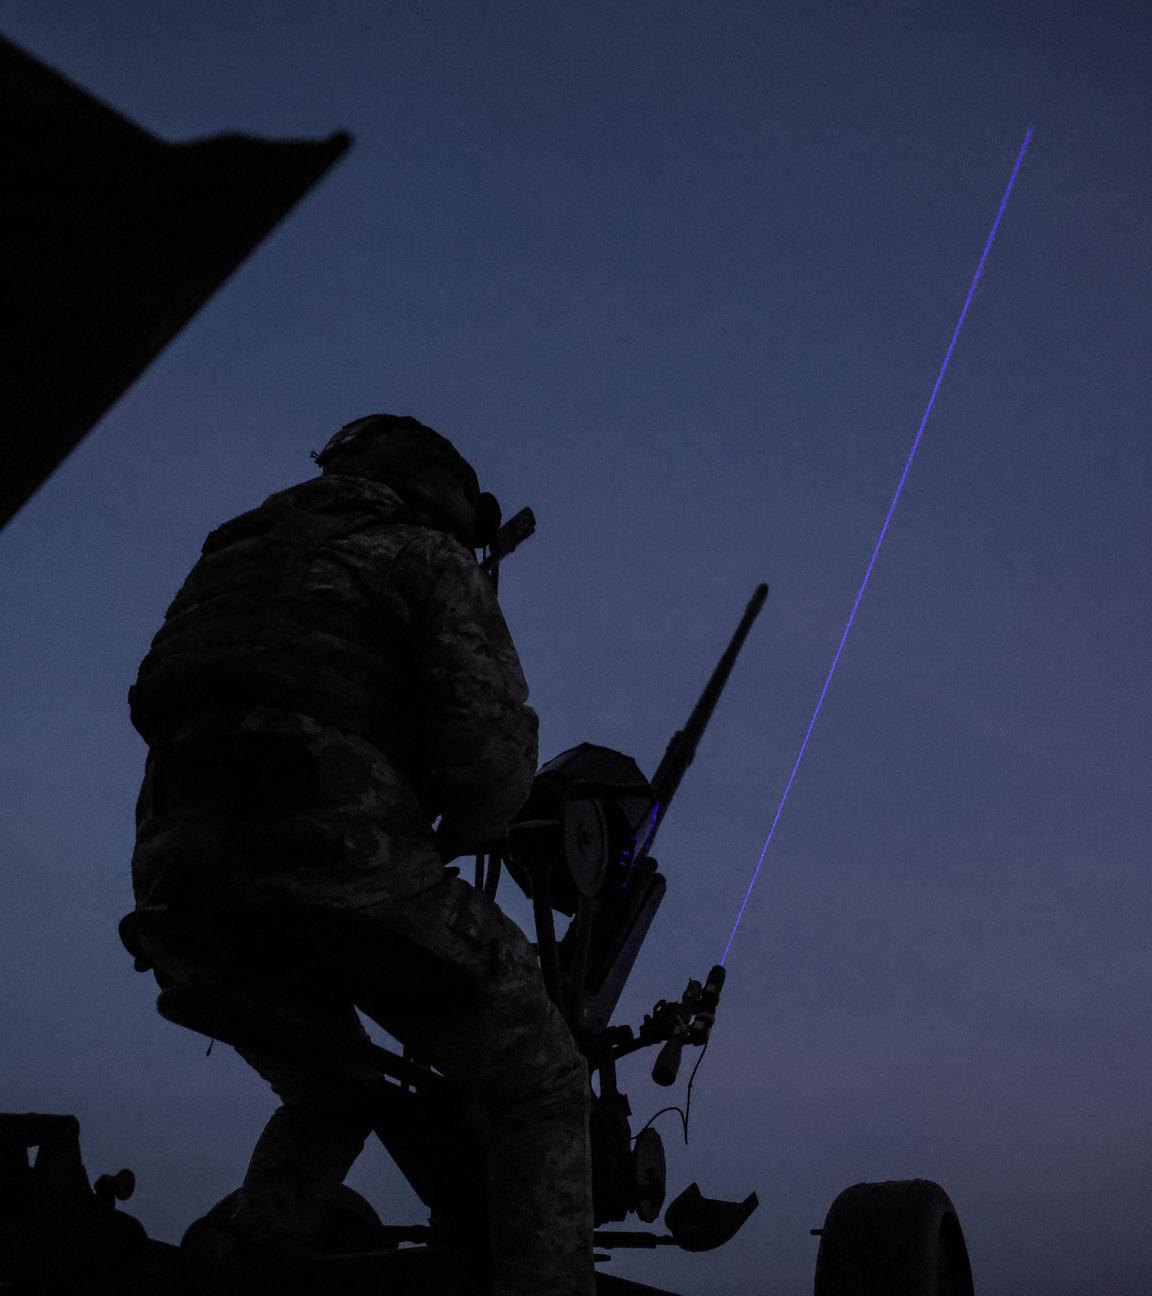 Archiv: Ein ukrainischer Soldat der 241. Brigade der Territorialen Verteidigungskräfte testet ein Laserzielgerät nach einem Luftangriffsalarm in der Region Kiew, Ukraine, 29.12.2023.